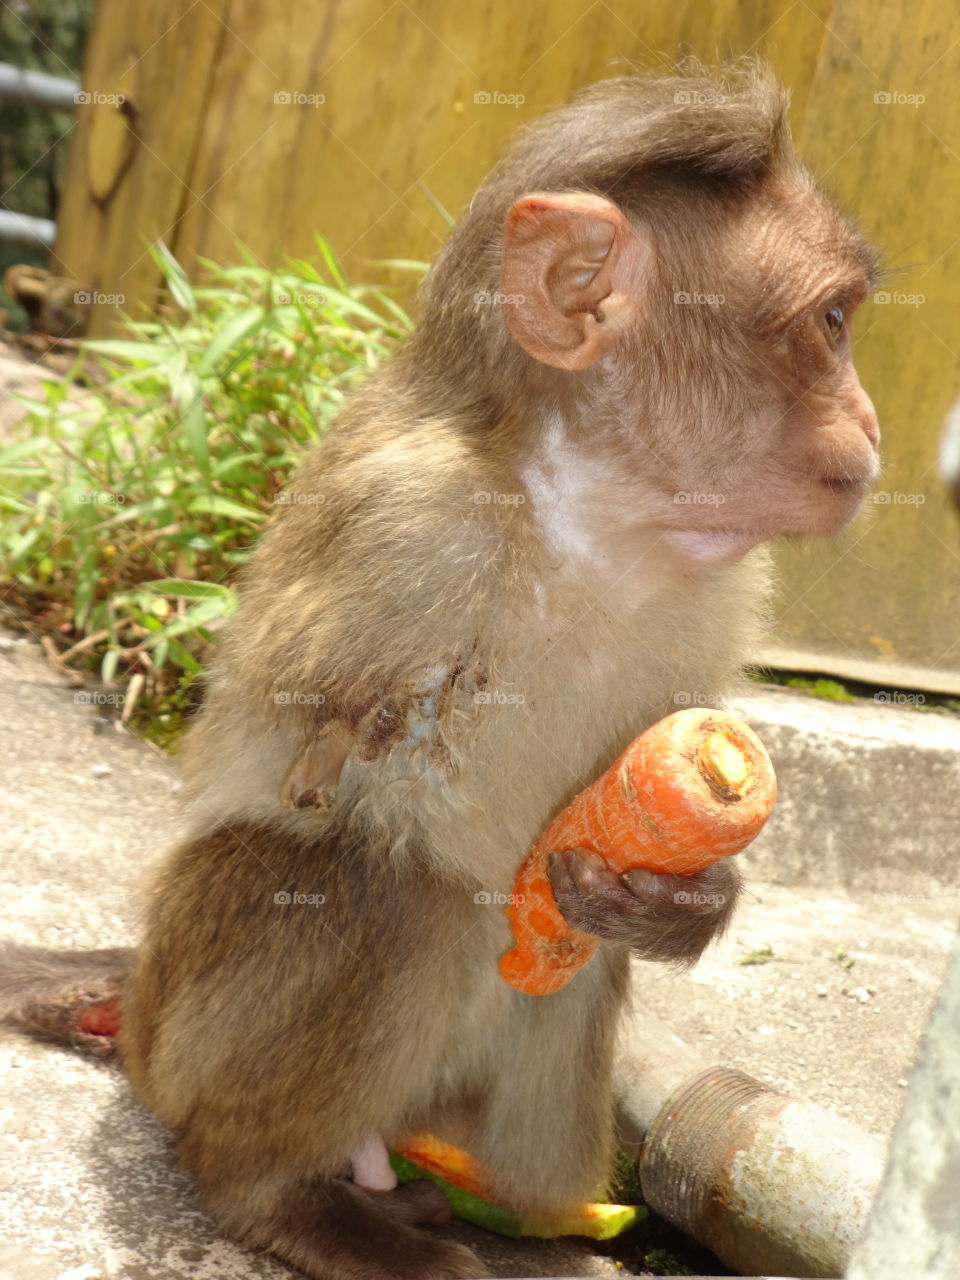 Cute Monkey Eat Carrot